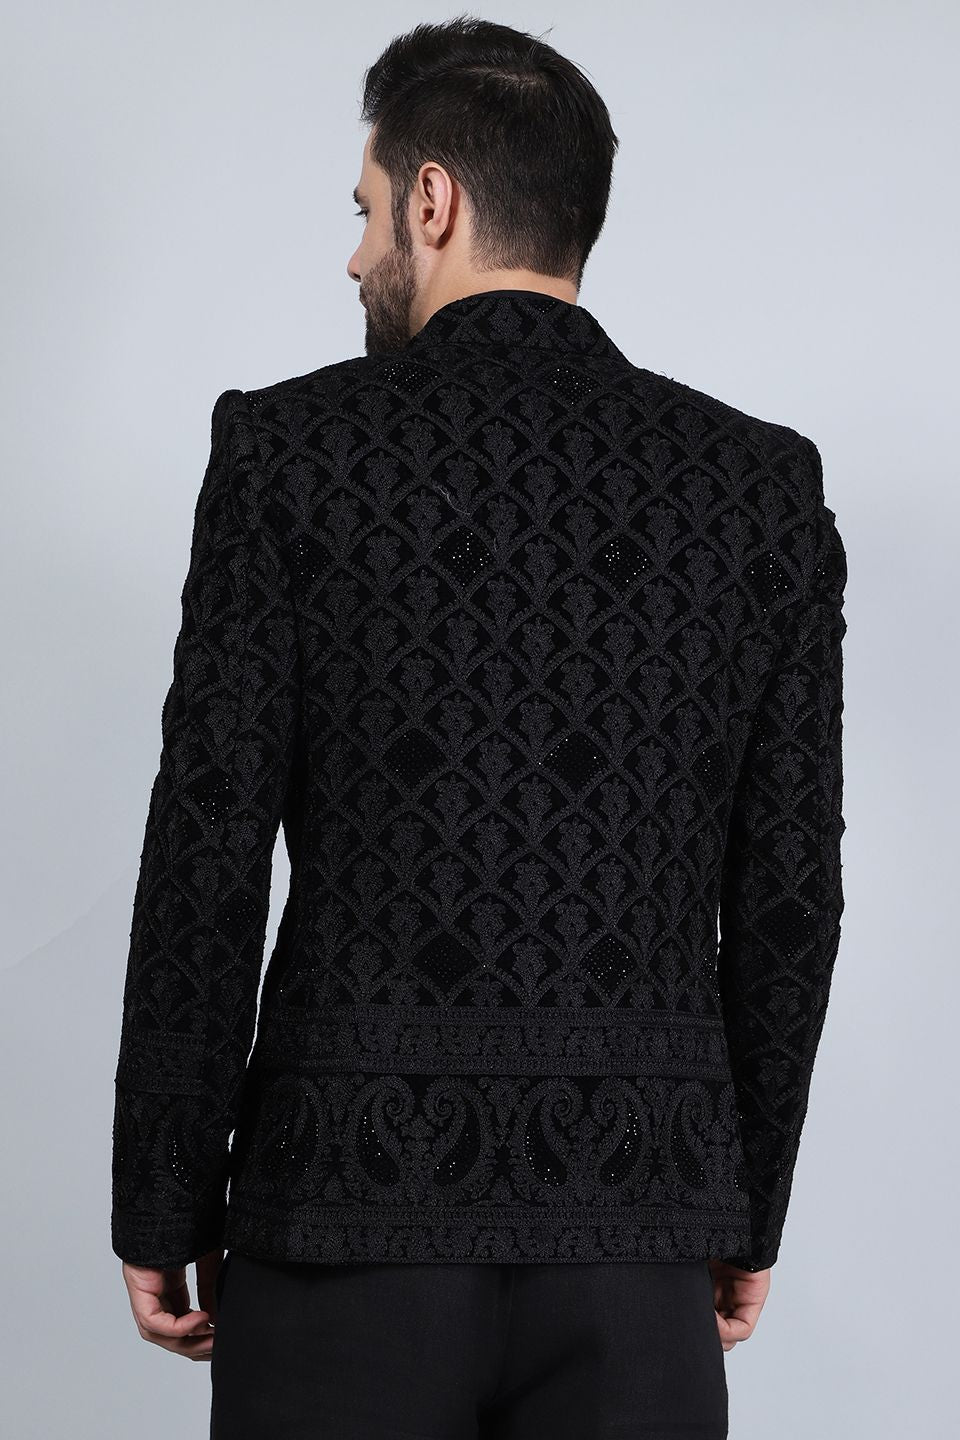 Embroidered Velvet Black Blazer